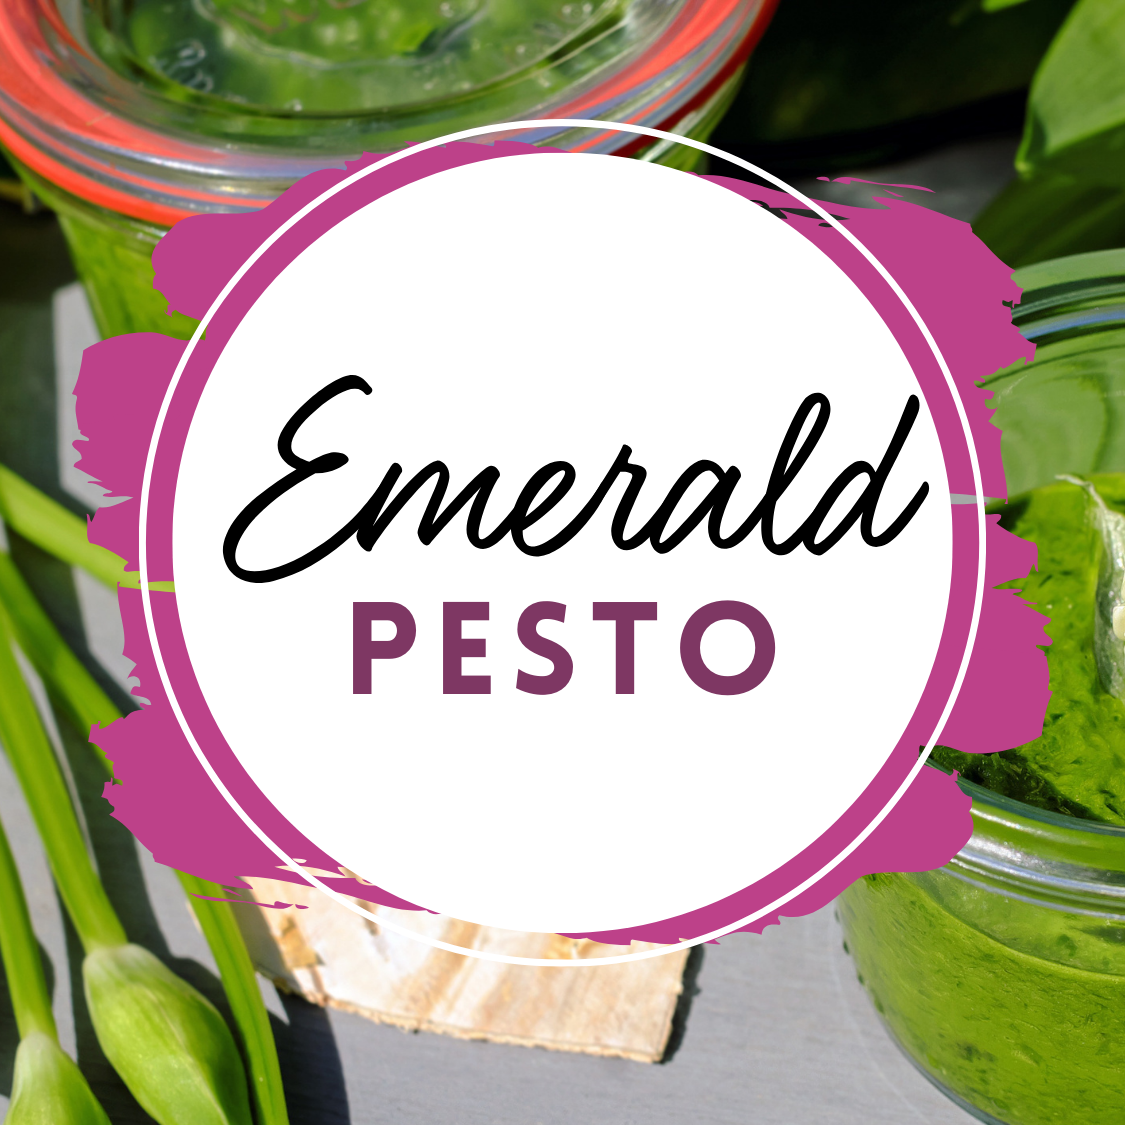 Emerald Pesto